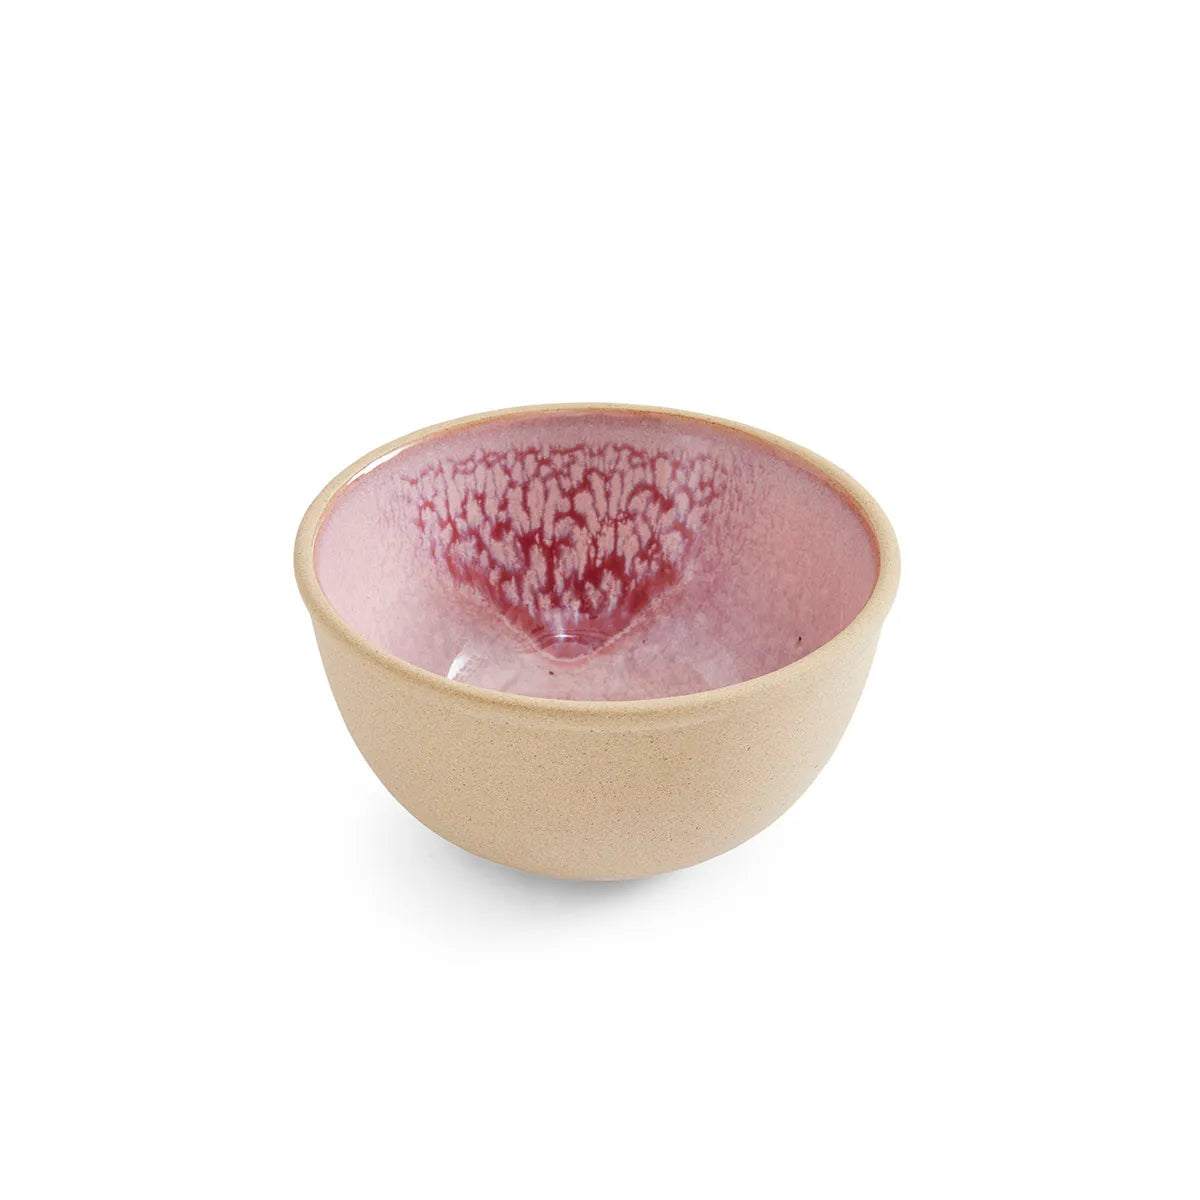 Portmeirion Minerals Small Bowl - Rose Quartz